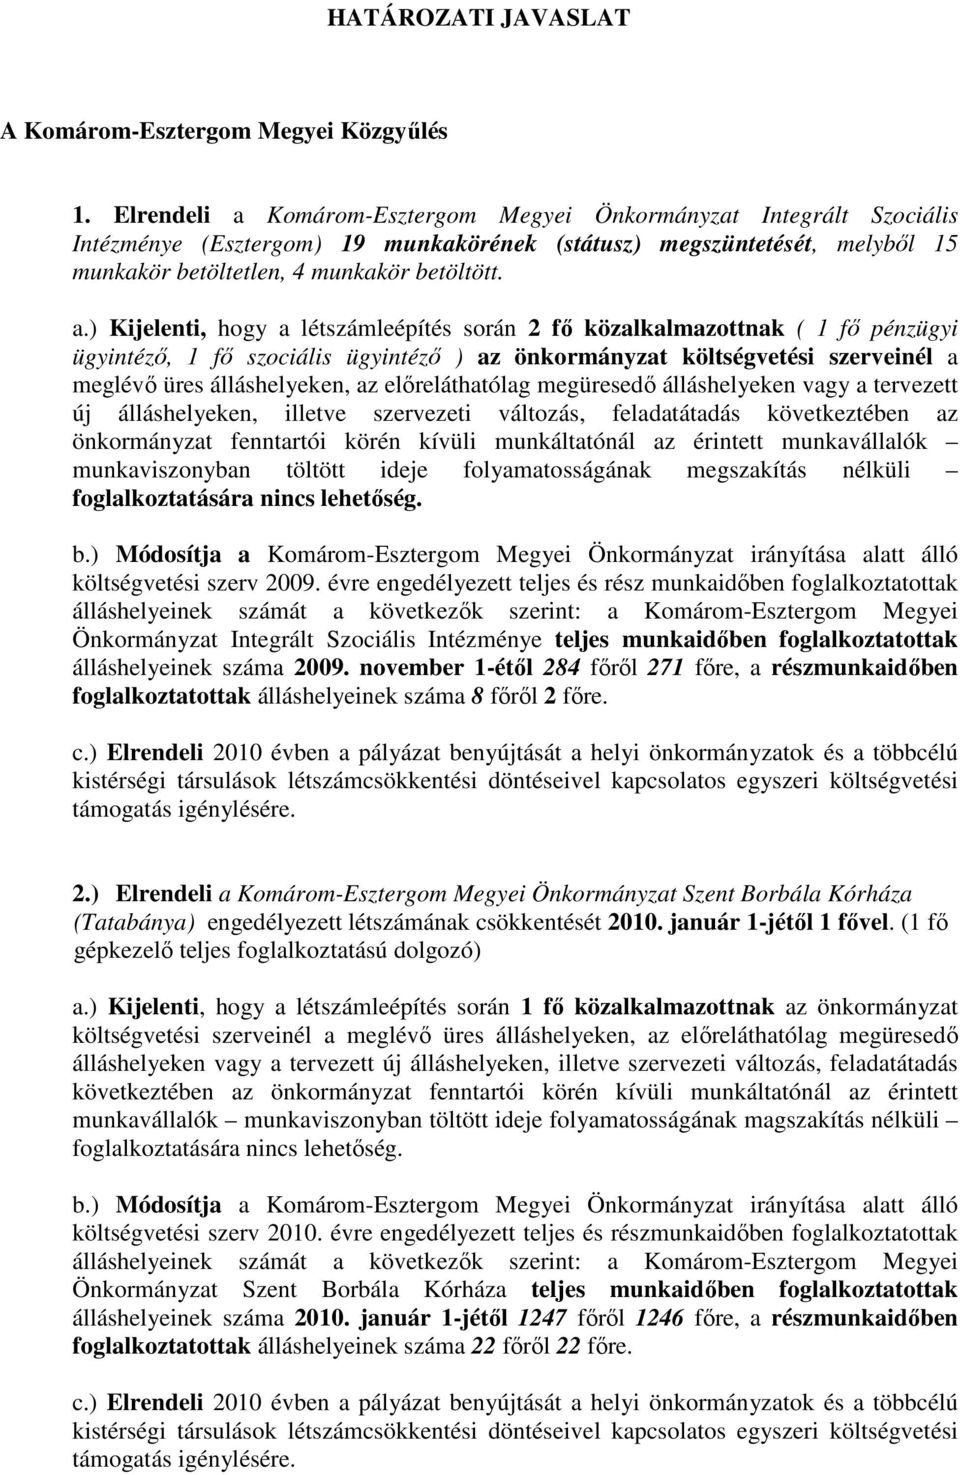 Komárom-Esztergom Megyei Önkormányzat Integrált Szociális Intézménye (Esztergom) 19 munkakörének (státusz) megszüntetését, melybıl 15 munkakör betöltetlen, 4 munkakör betöltött. a.